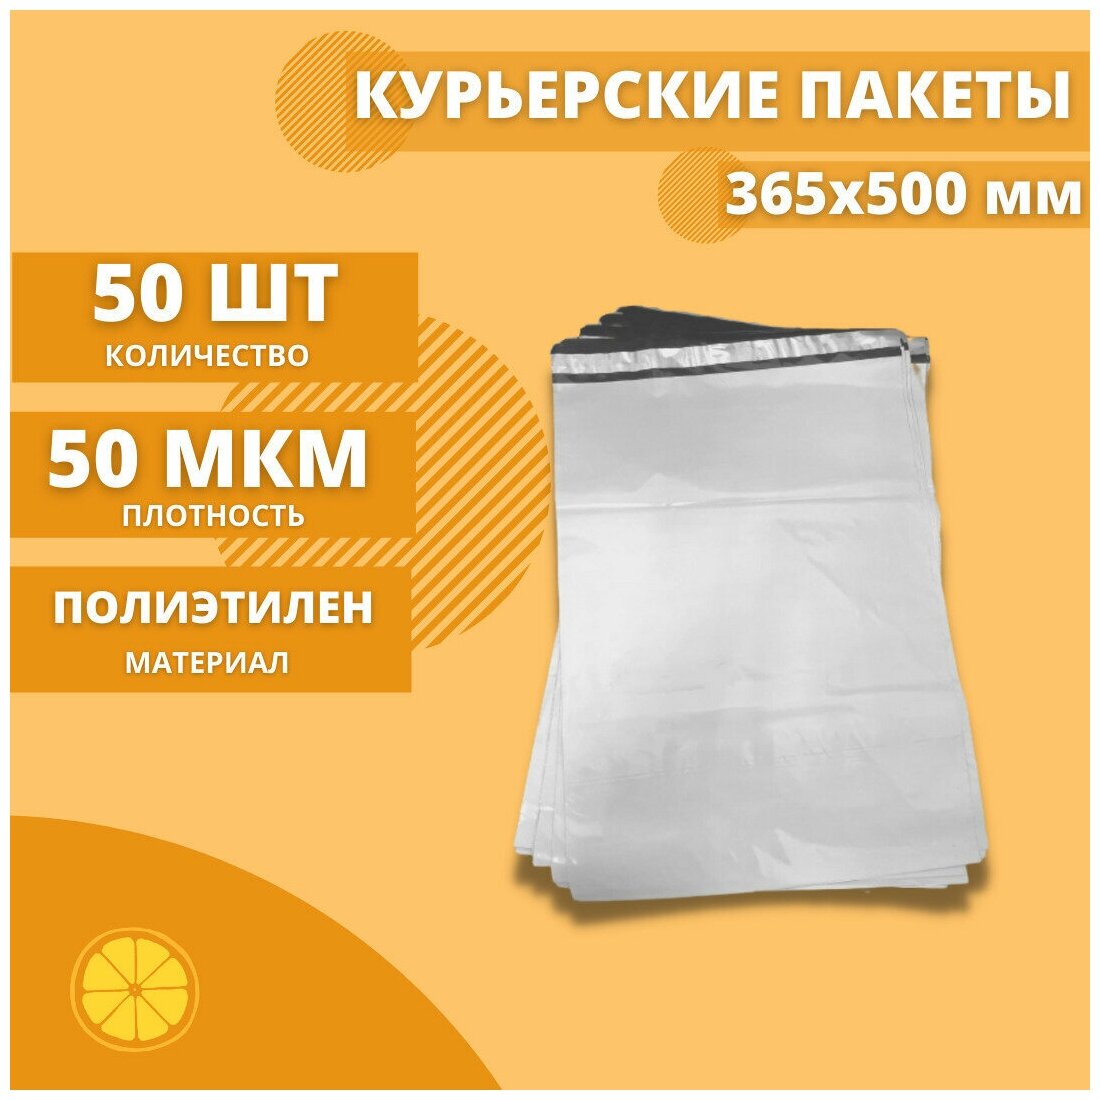 Курьерский пакет 365*500мм (50мкм), без кармана, 50 шт. / сейф пакет для маркетплейсов / пакет с клеевым клапаном